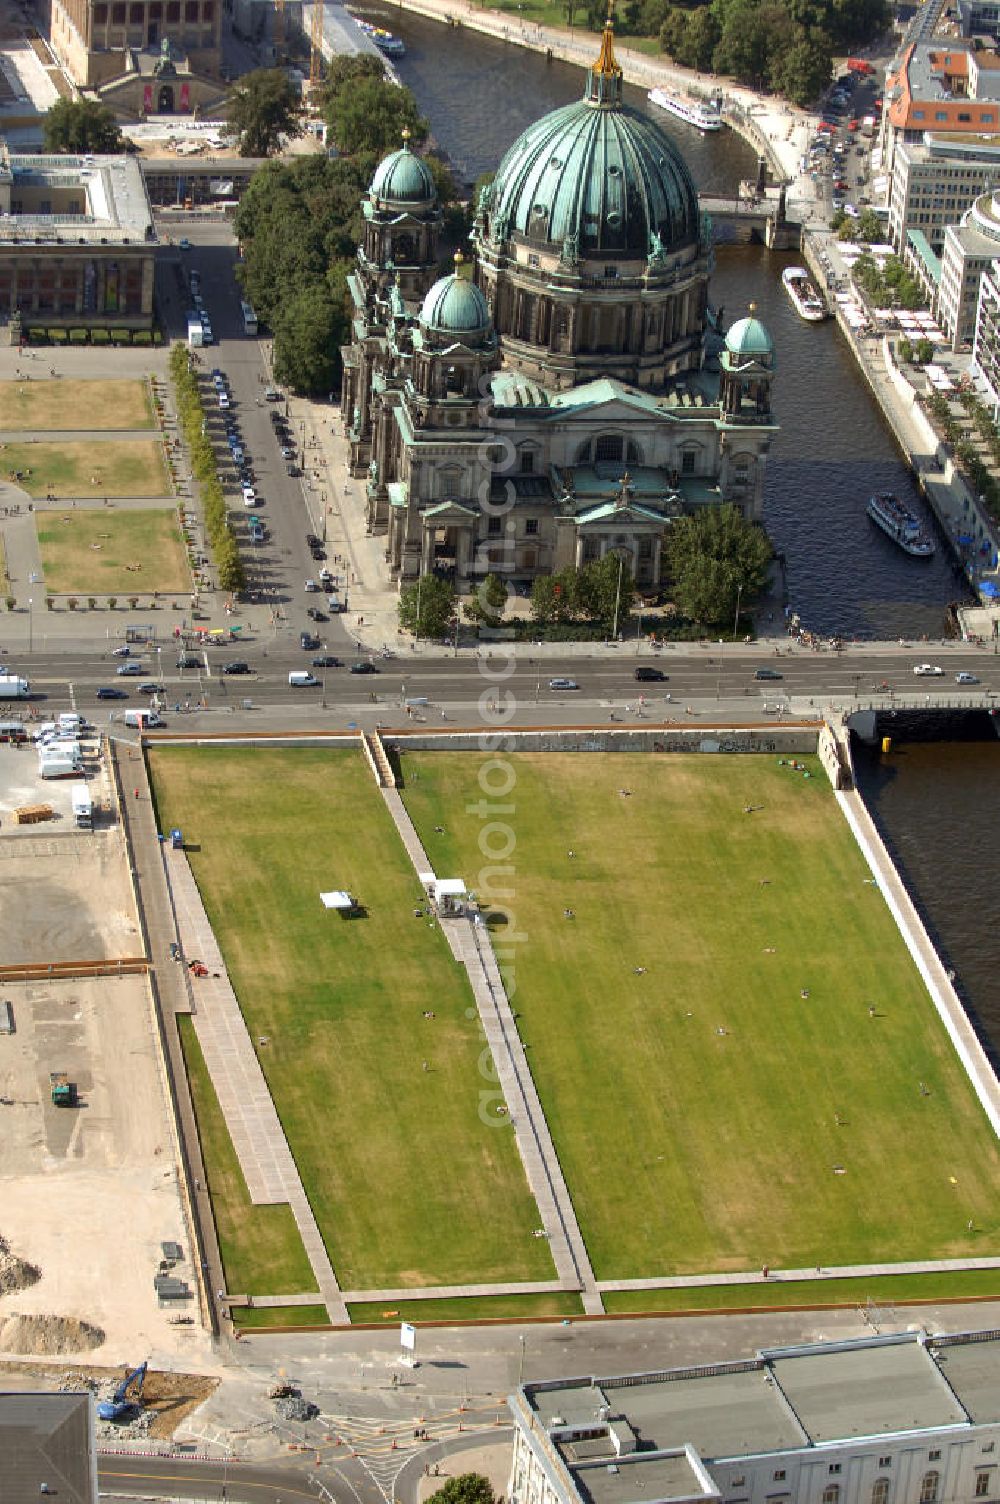 Berlin from above - Blick auf den Schlossplatz / Schloßplatz an der Spree mit dem Berliner Dom.